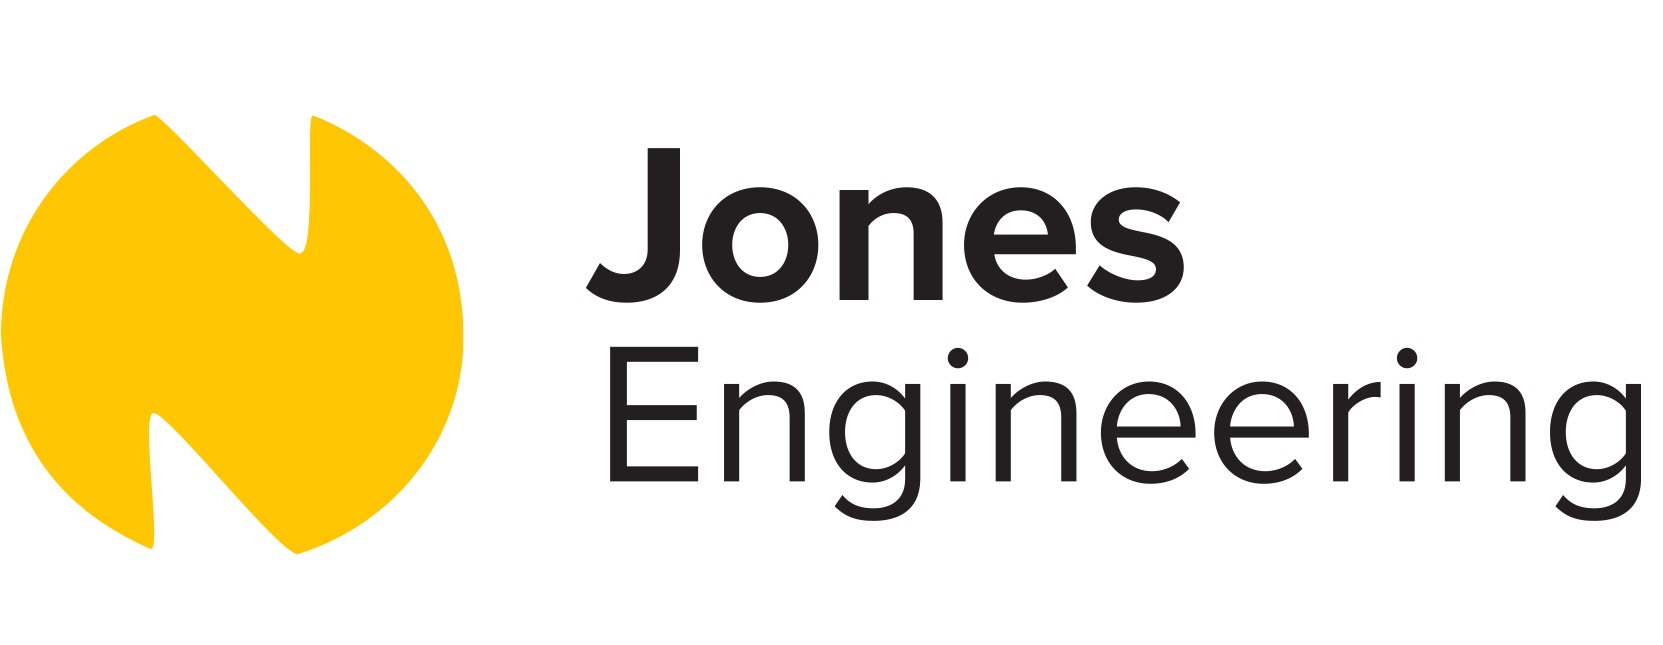 Jones Engineering jobs